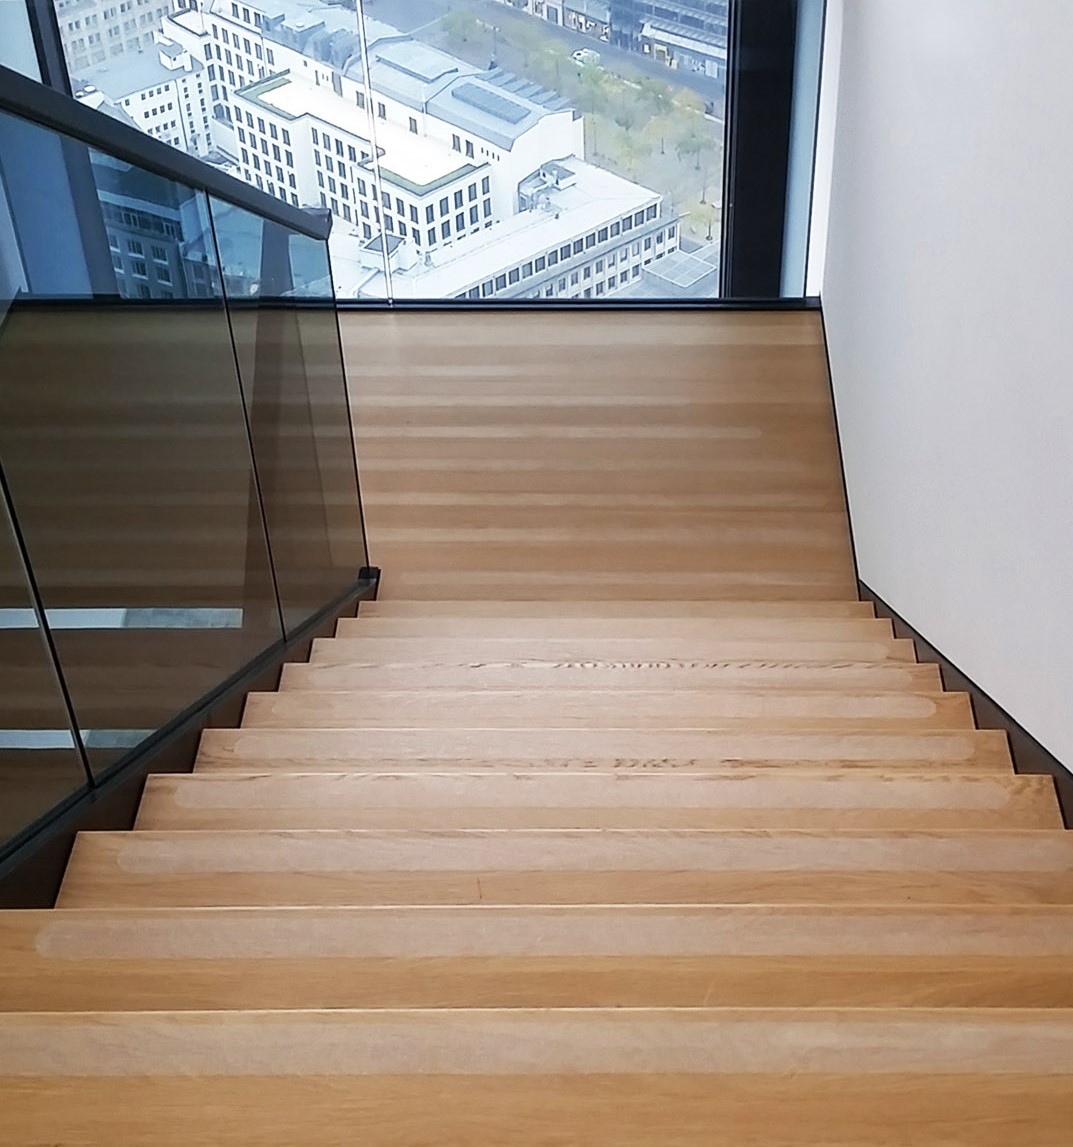 Antirutschmatte, die selbstklebend ist, richtig auf Treppenstufen